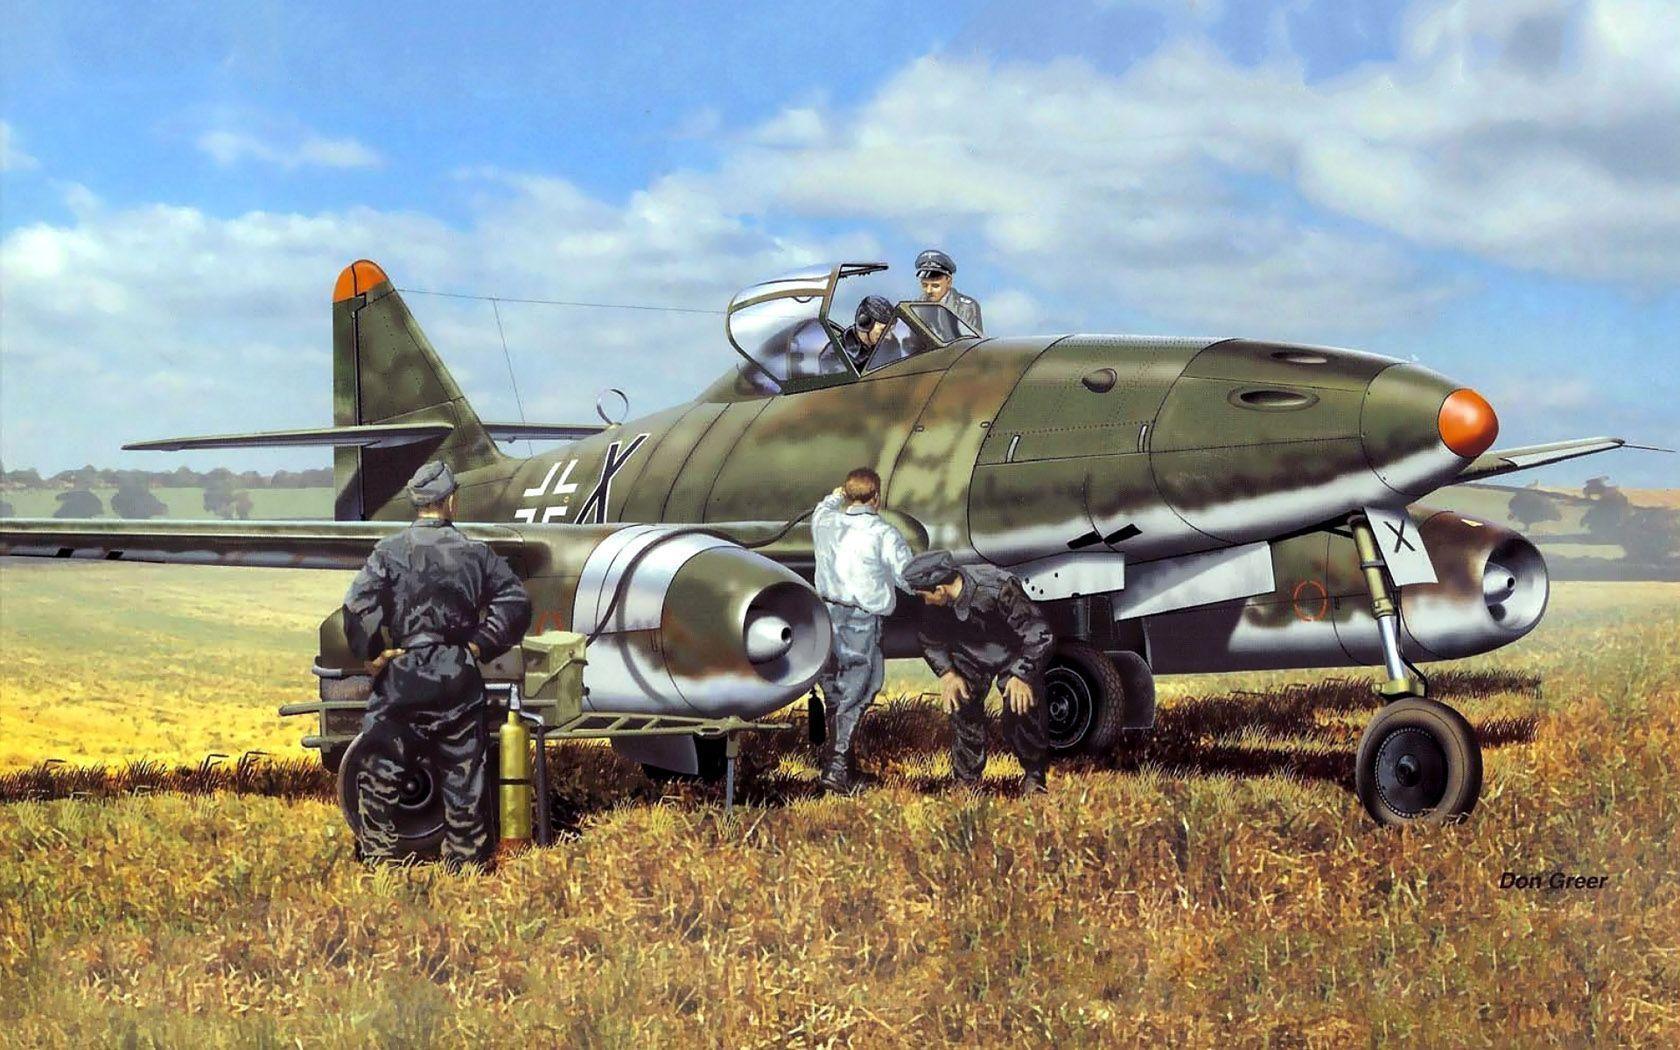 Messerschmitt Me 262 Wallpapers Wallpaper Cave Images, Photos, Reviews